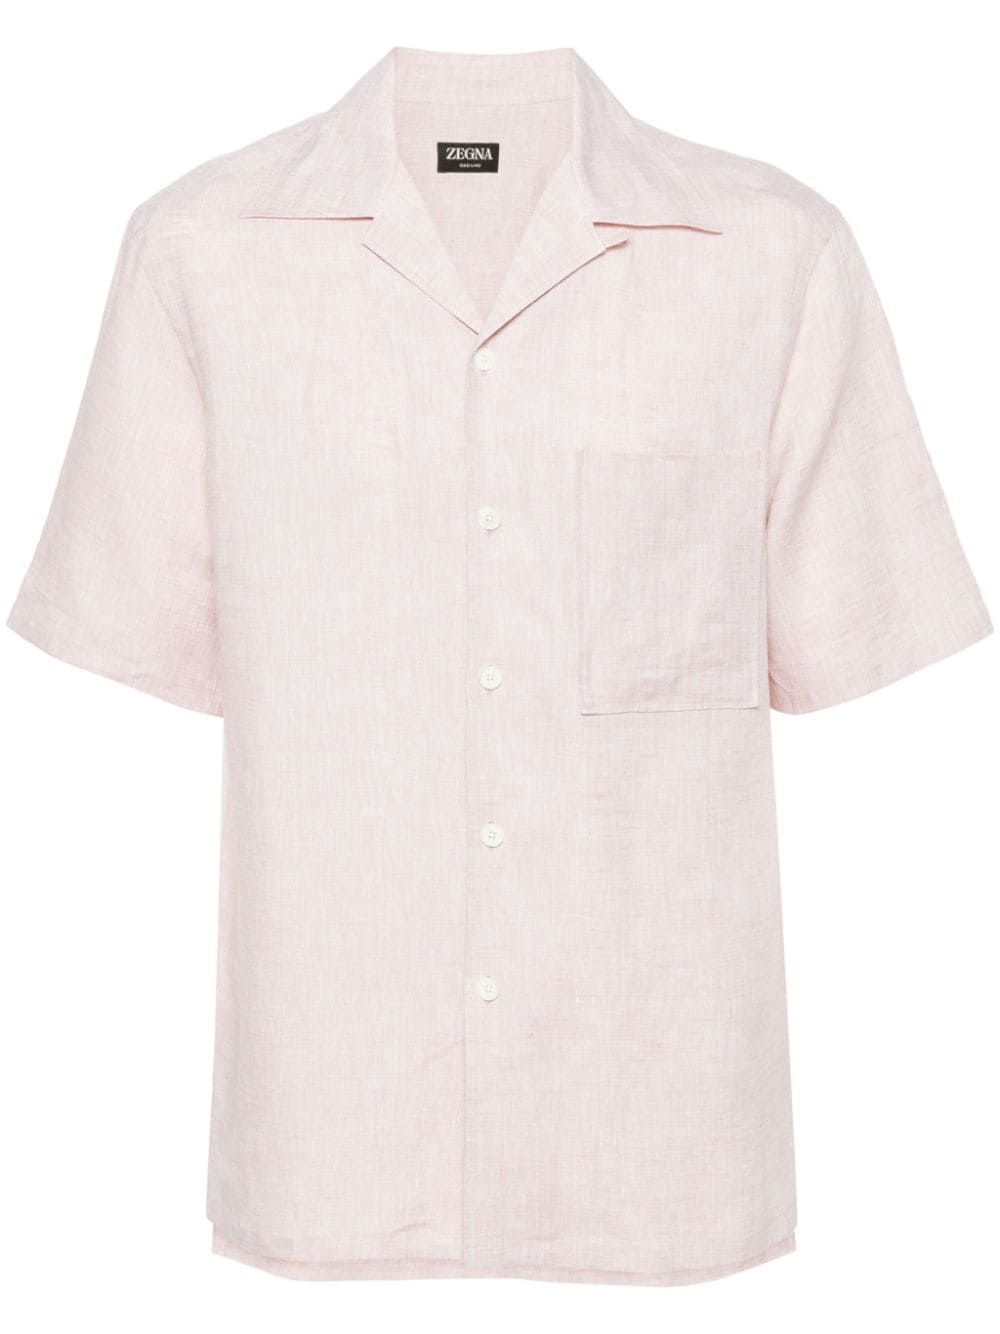 Image 1 of Zegna short-sleeve linen shirt